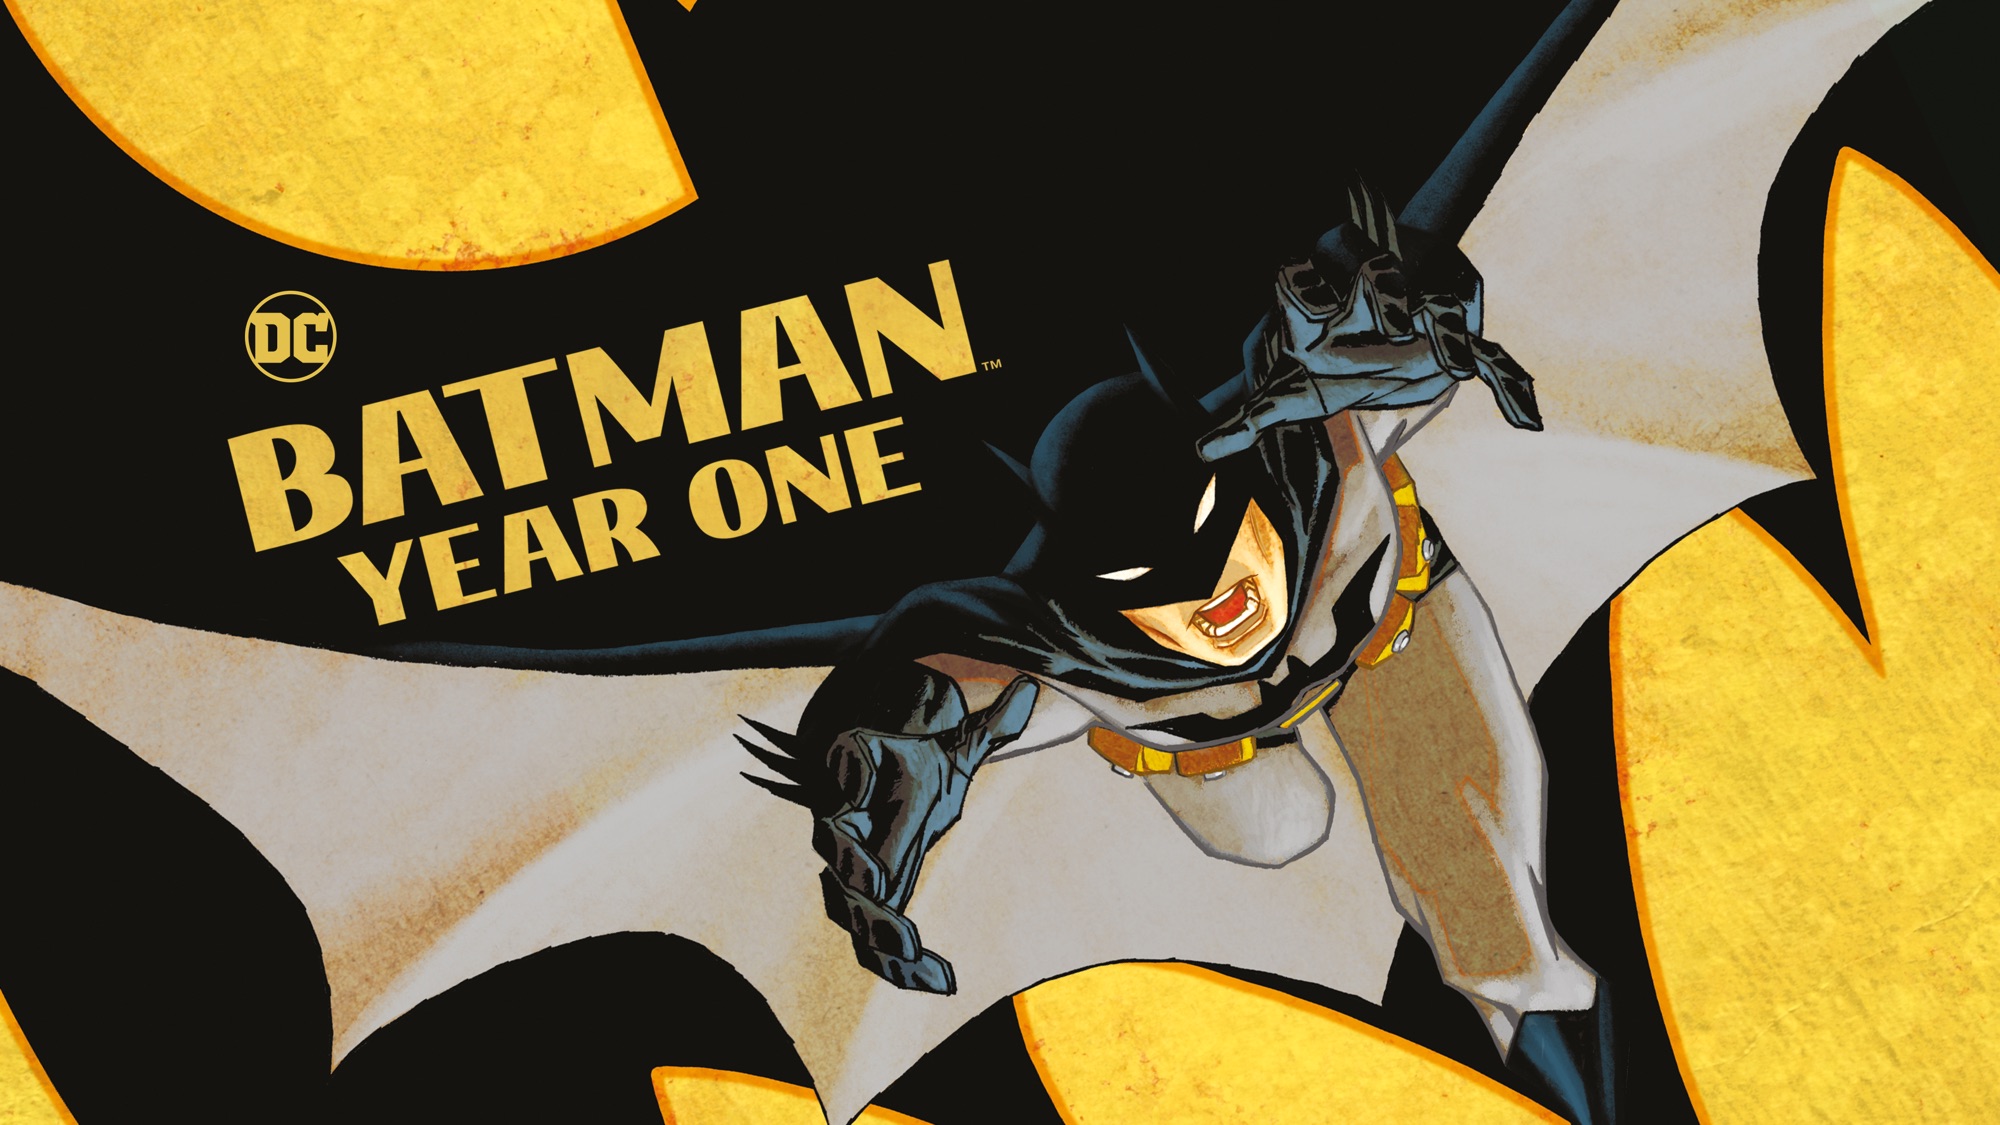 Бэтмен: год первый Постер. Комиксы: Бэтмен. Год первый. Киношное картина Бэтмен. Бэтмен заставка 1960. Комиксы бэтмен год